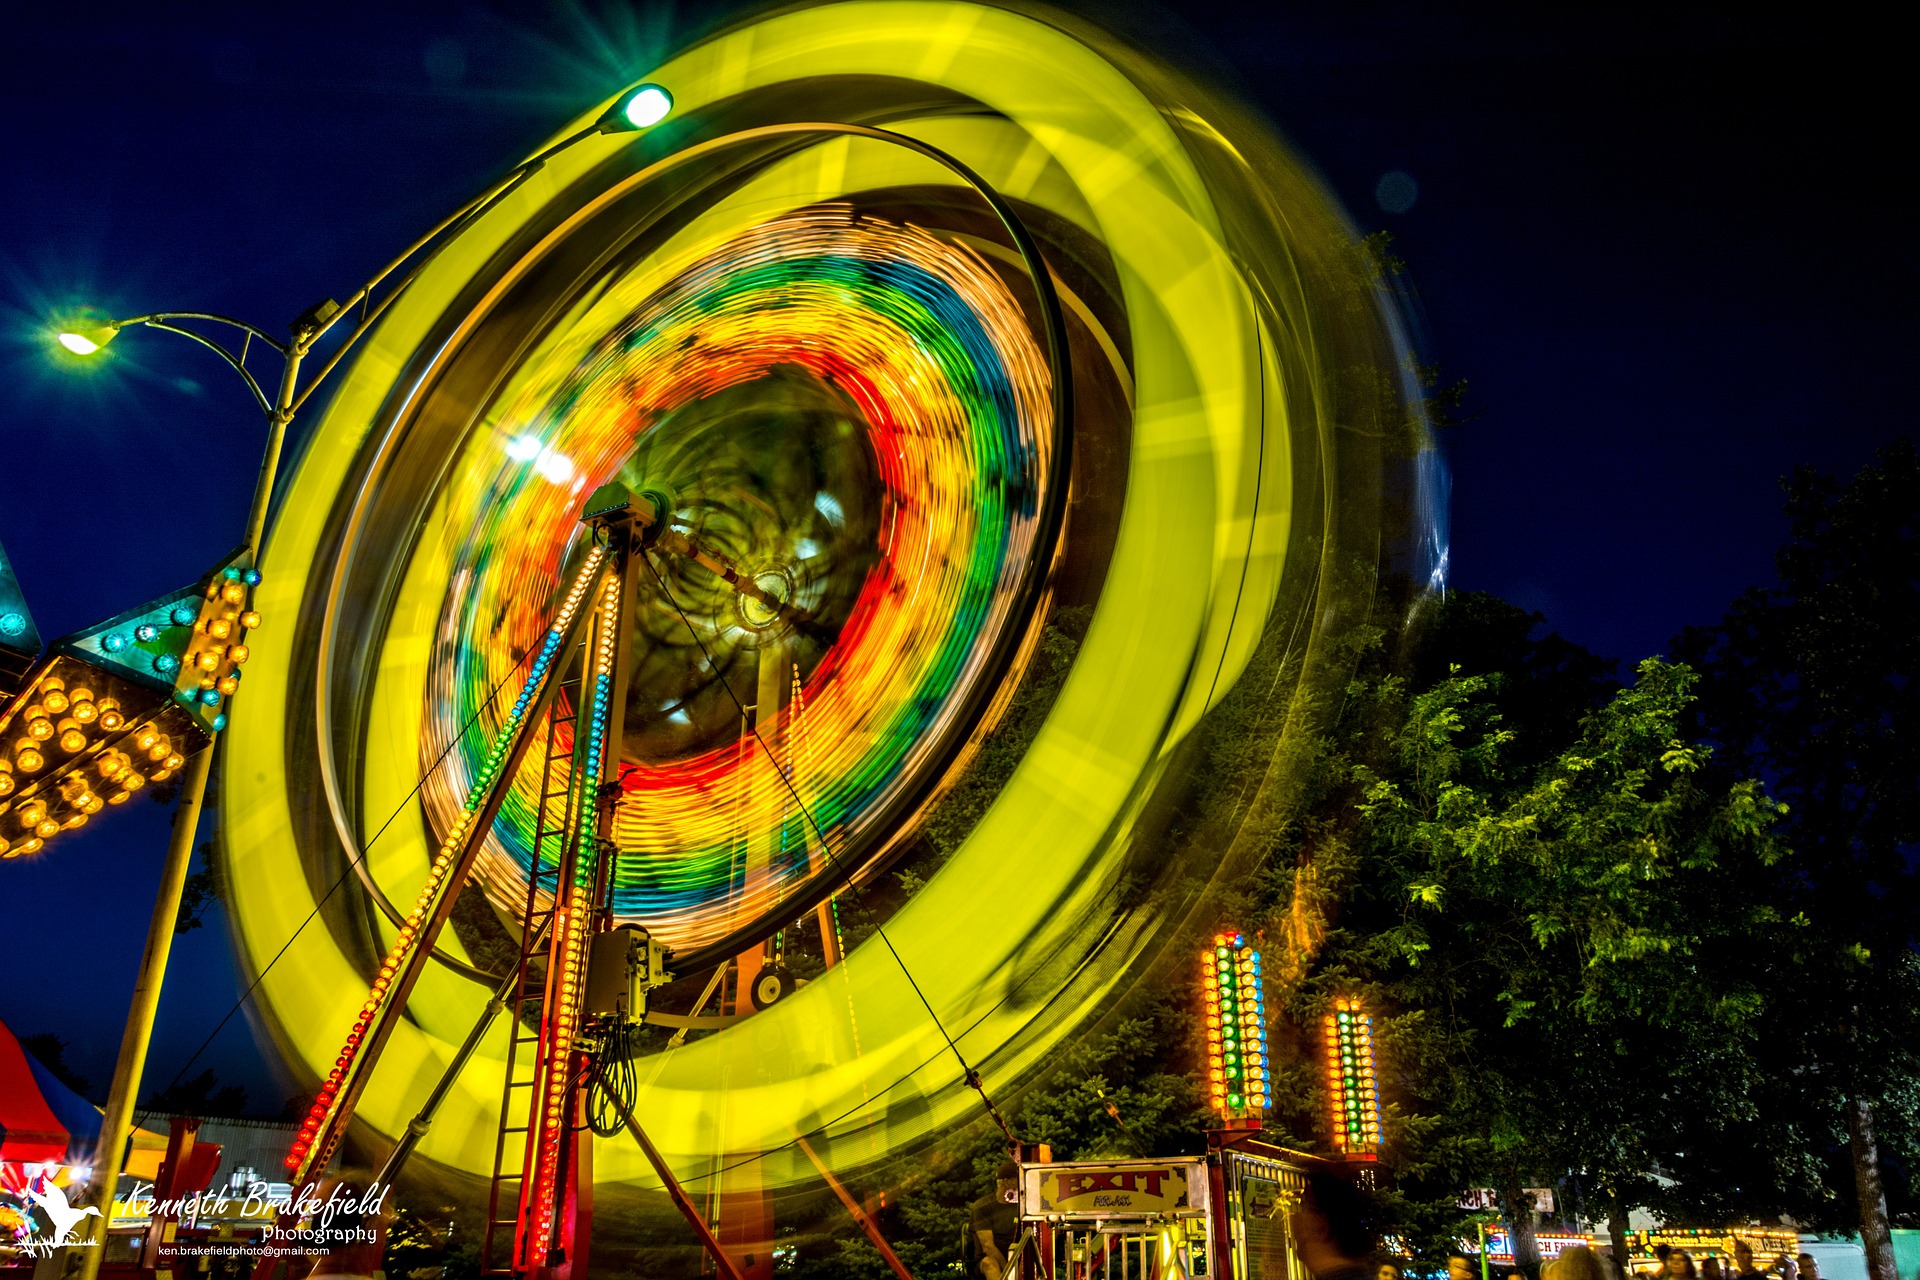 Spinning Carnival Ride